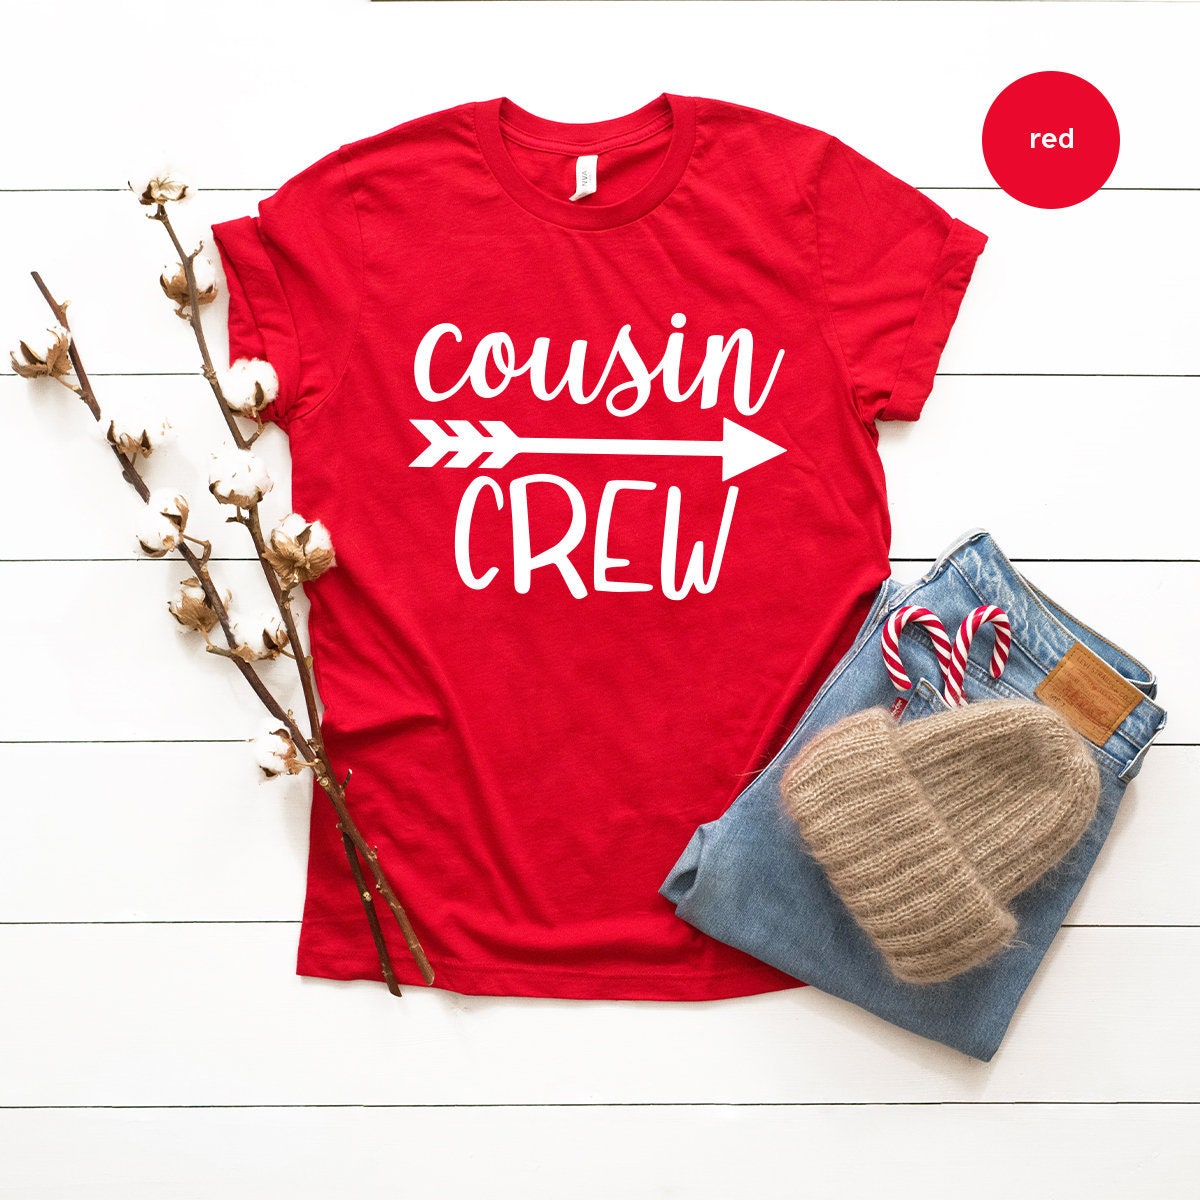 Matching Cousin Shirt, Cousin Crew T-Shirt, Christmas Cousin Gift, Family Christmas Shirt, Christmas T Shirt, Cousin Crew Shirt - Fastdeliverytees.com